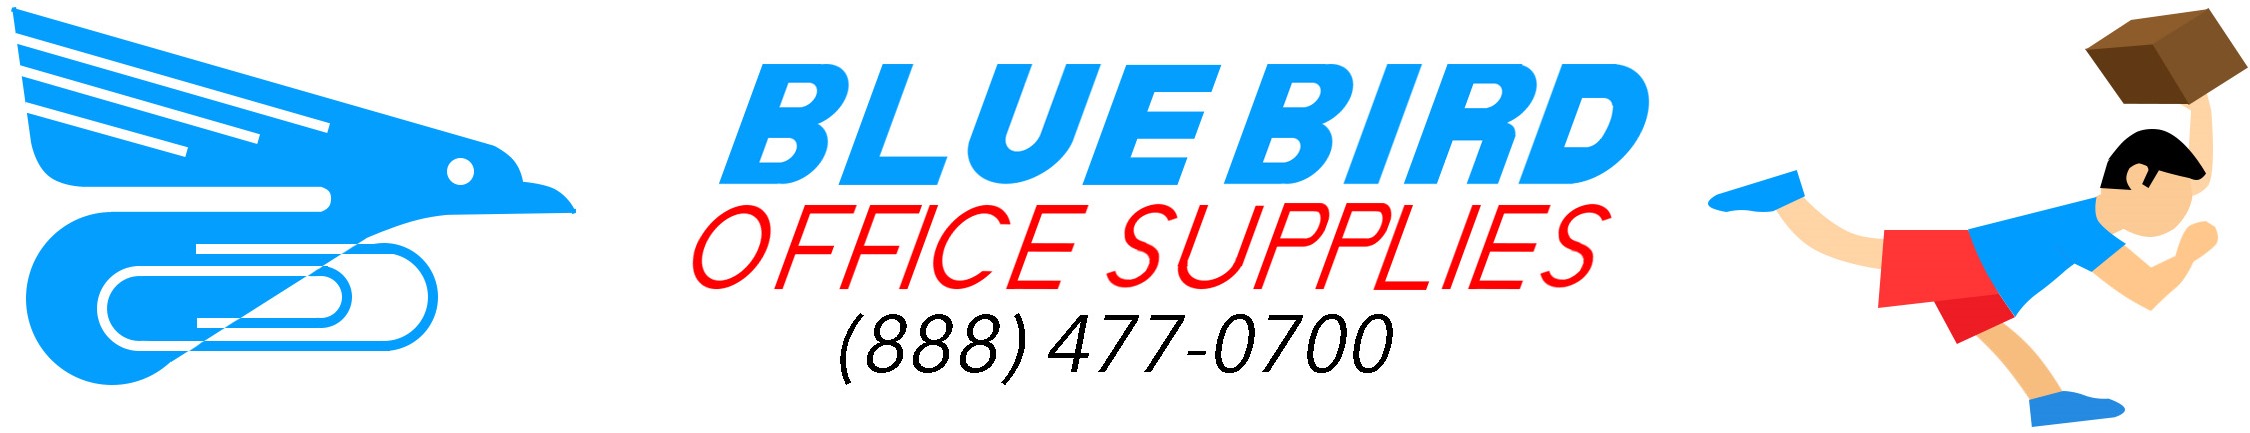 Bluebird Office Supplies